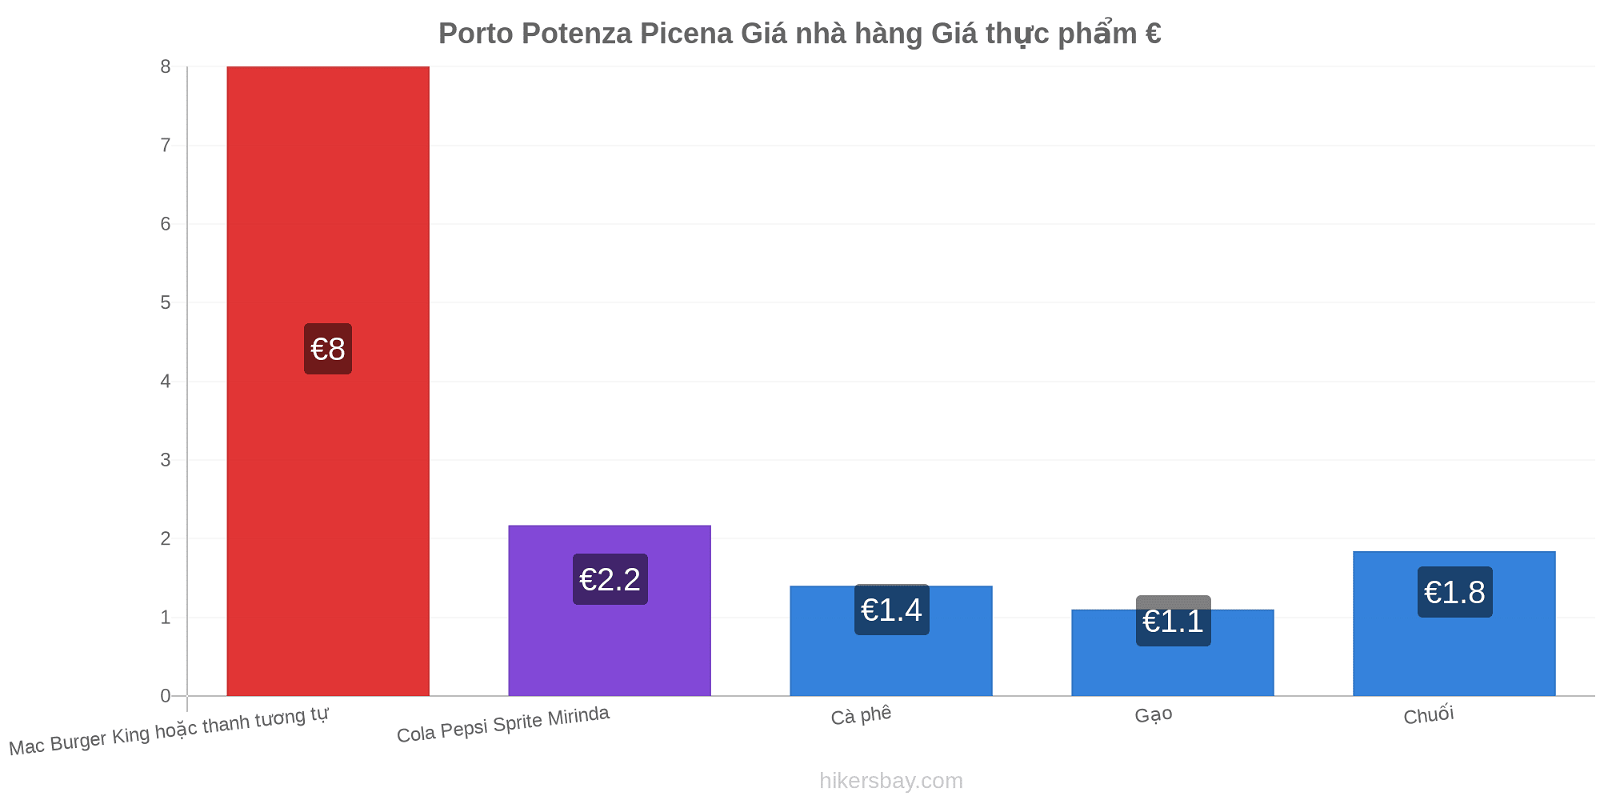 Porto Potenza Picena thay đổi giá cả hikersbay.com